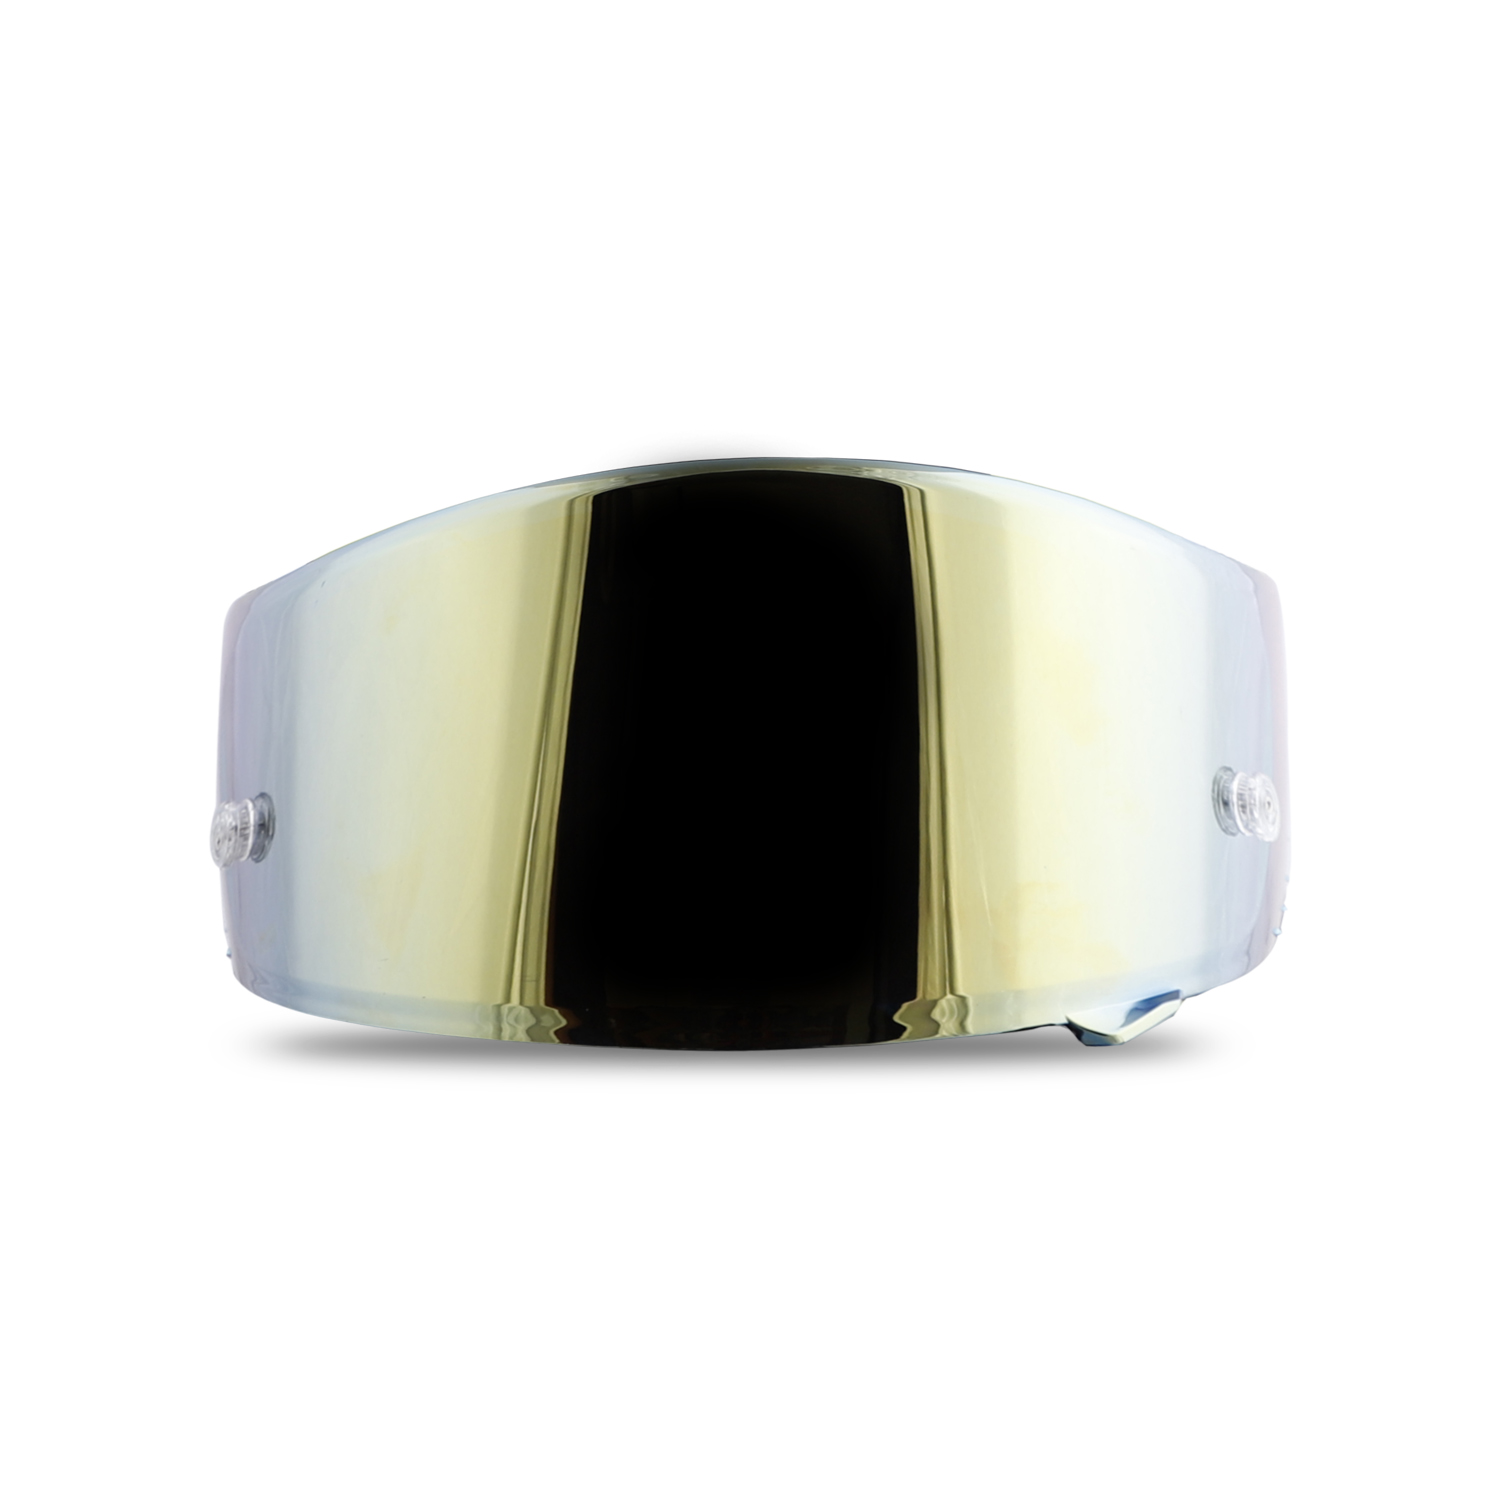 Steelbird SA-2 Helmet Visor Compatible For All SA-2 Model Helmets (Chrome Gold Visor)